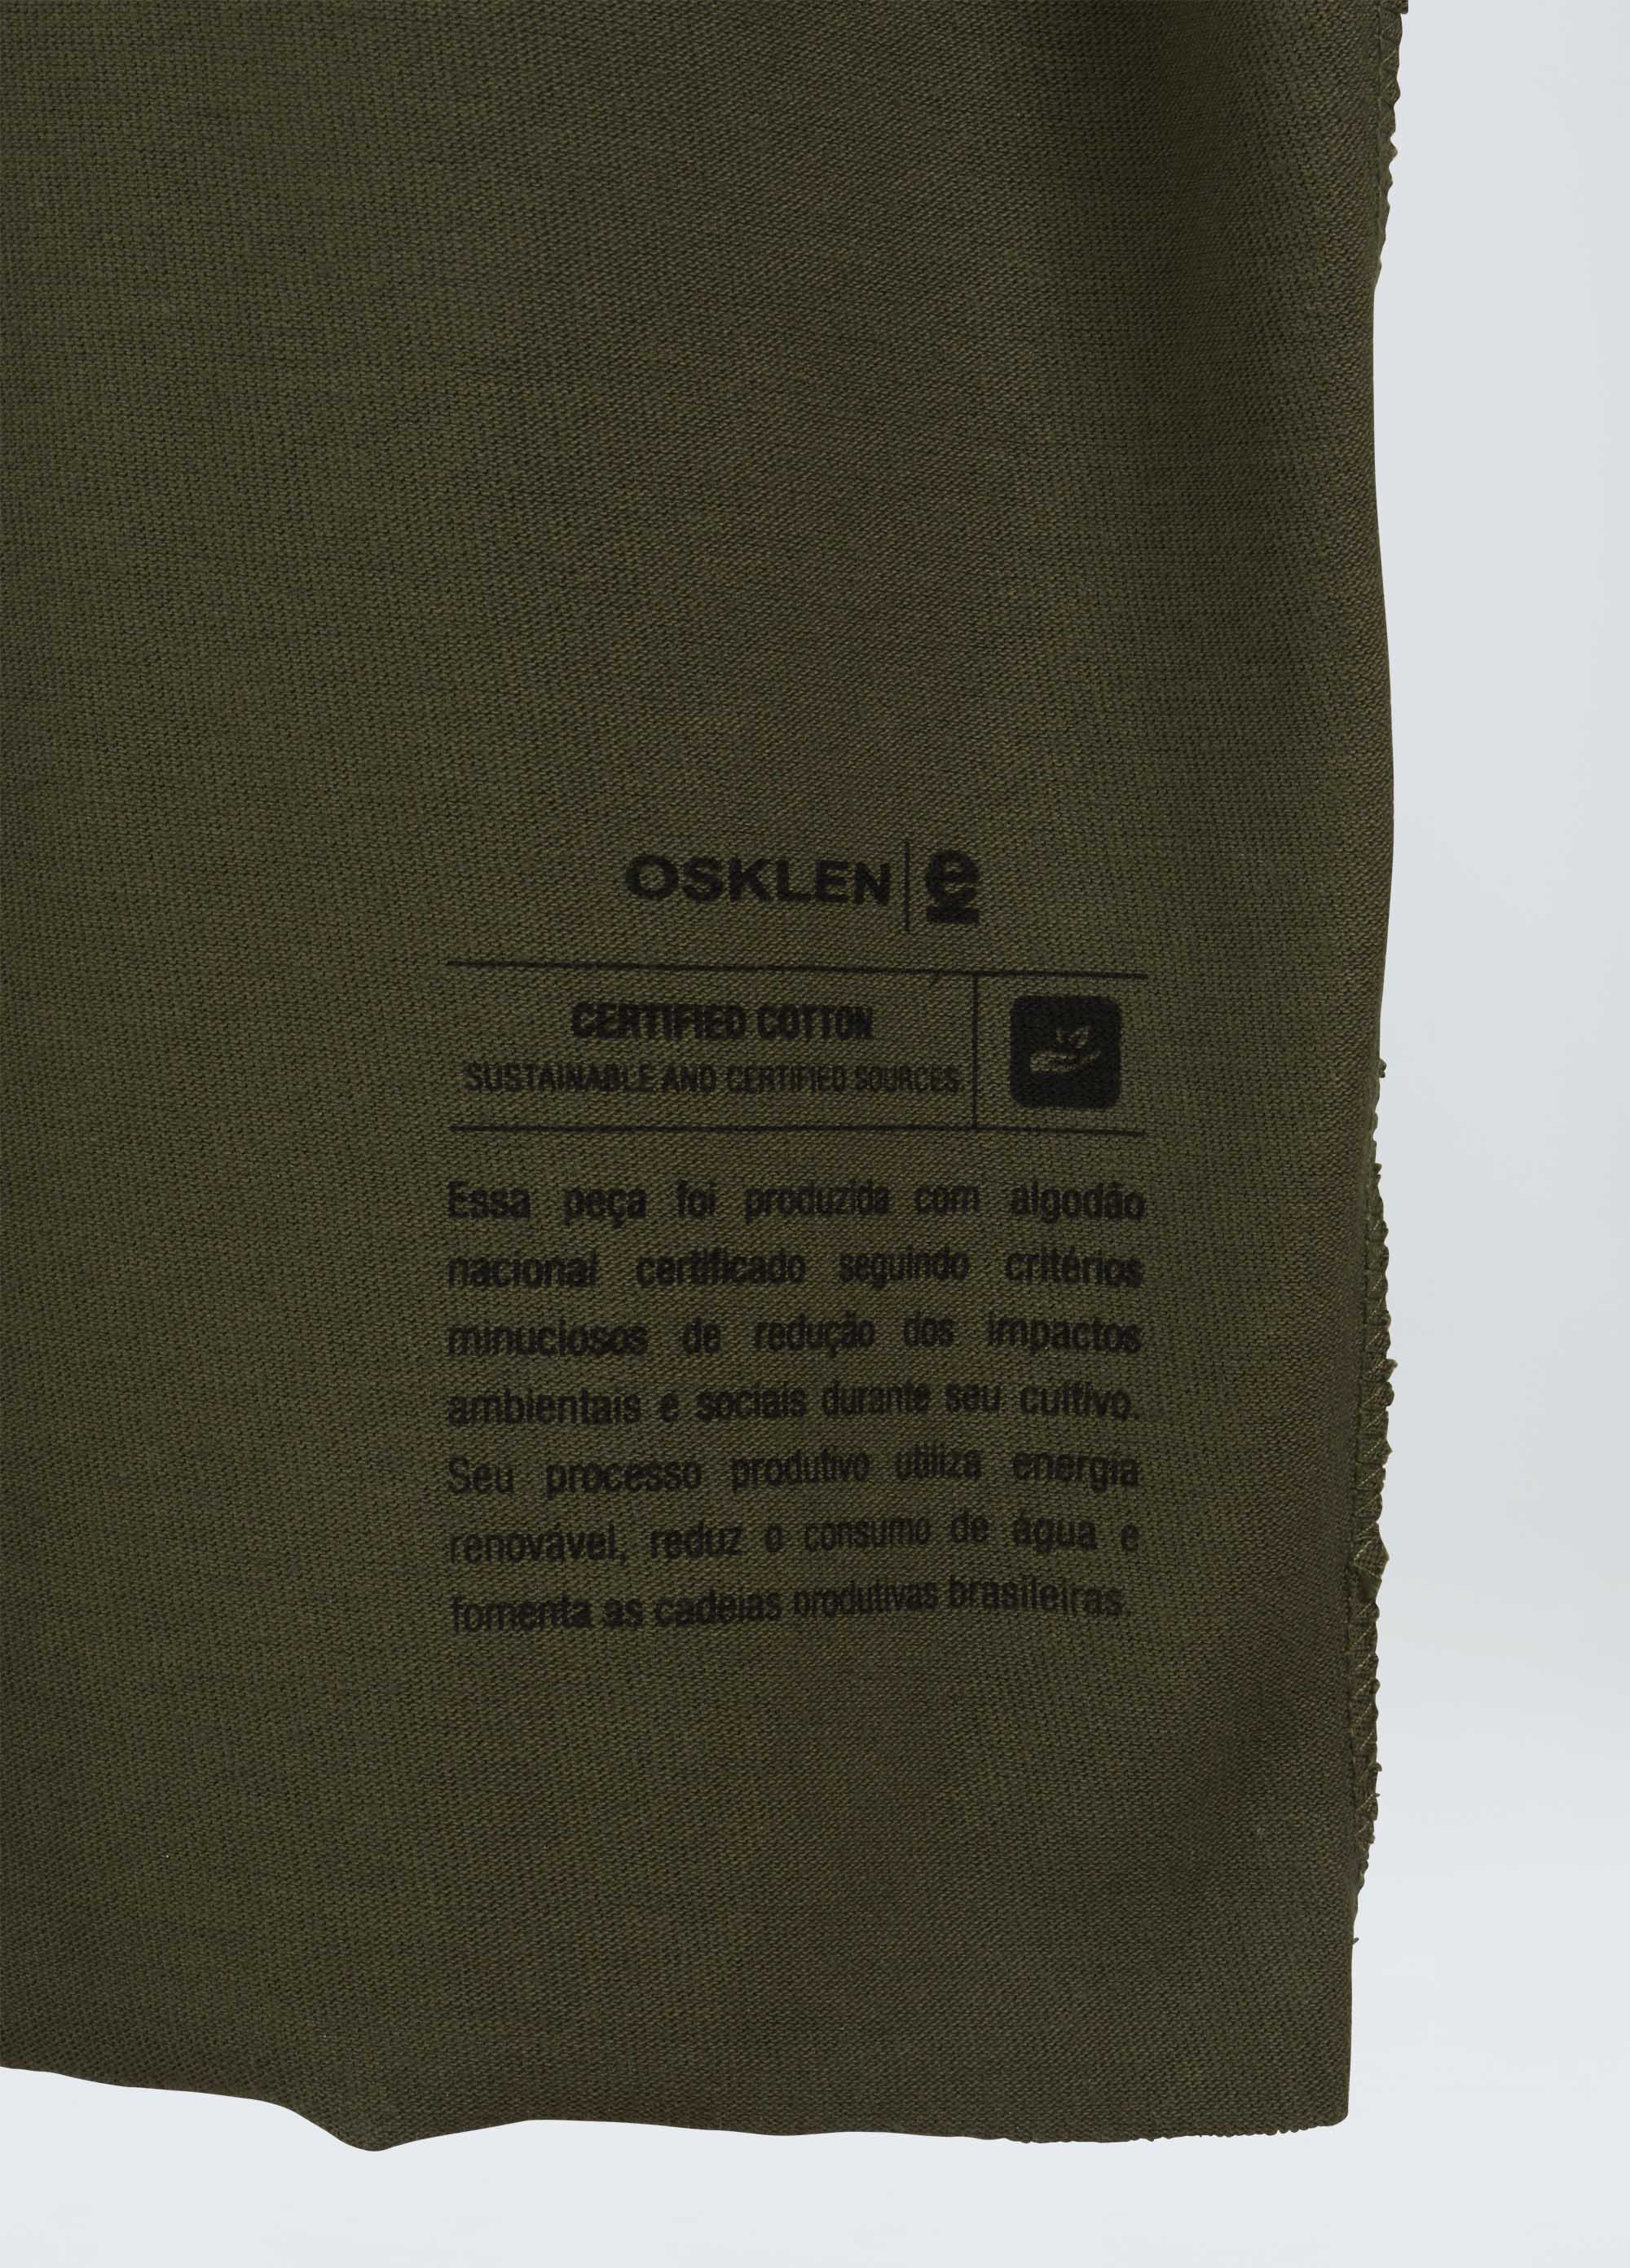 T-shirt pocket design